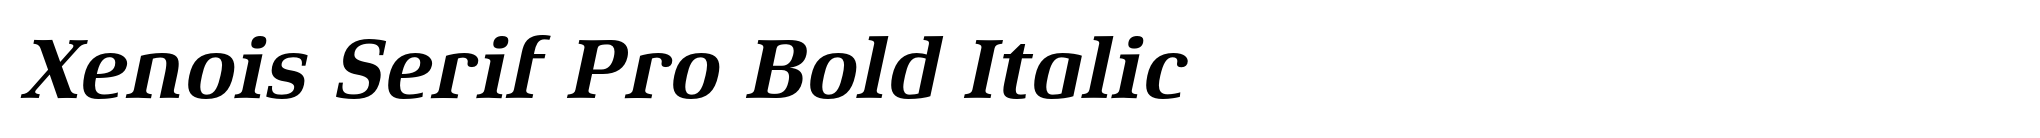 Xenois Serif Pro Bold Italic image